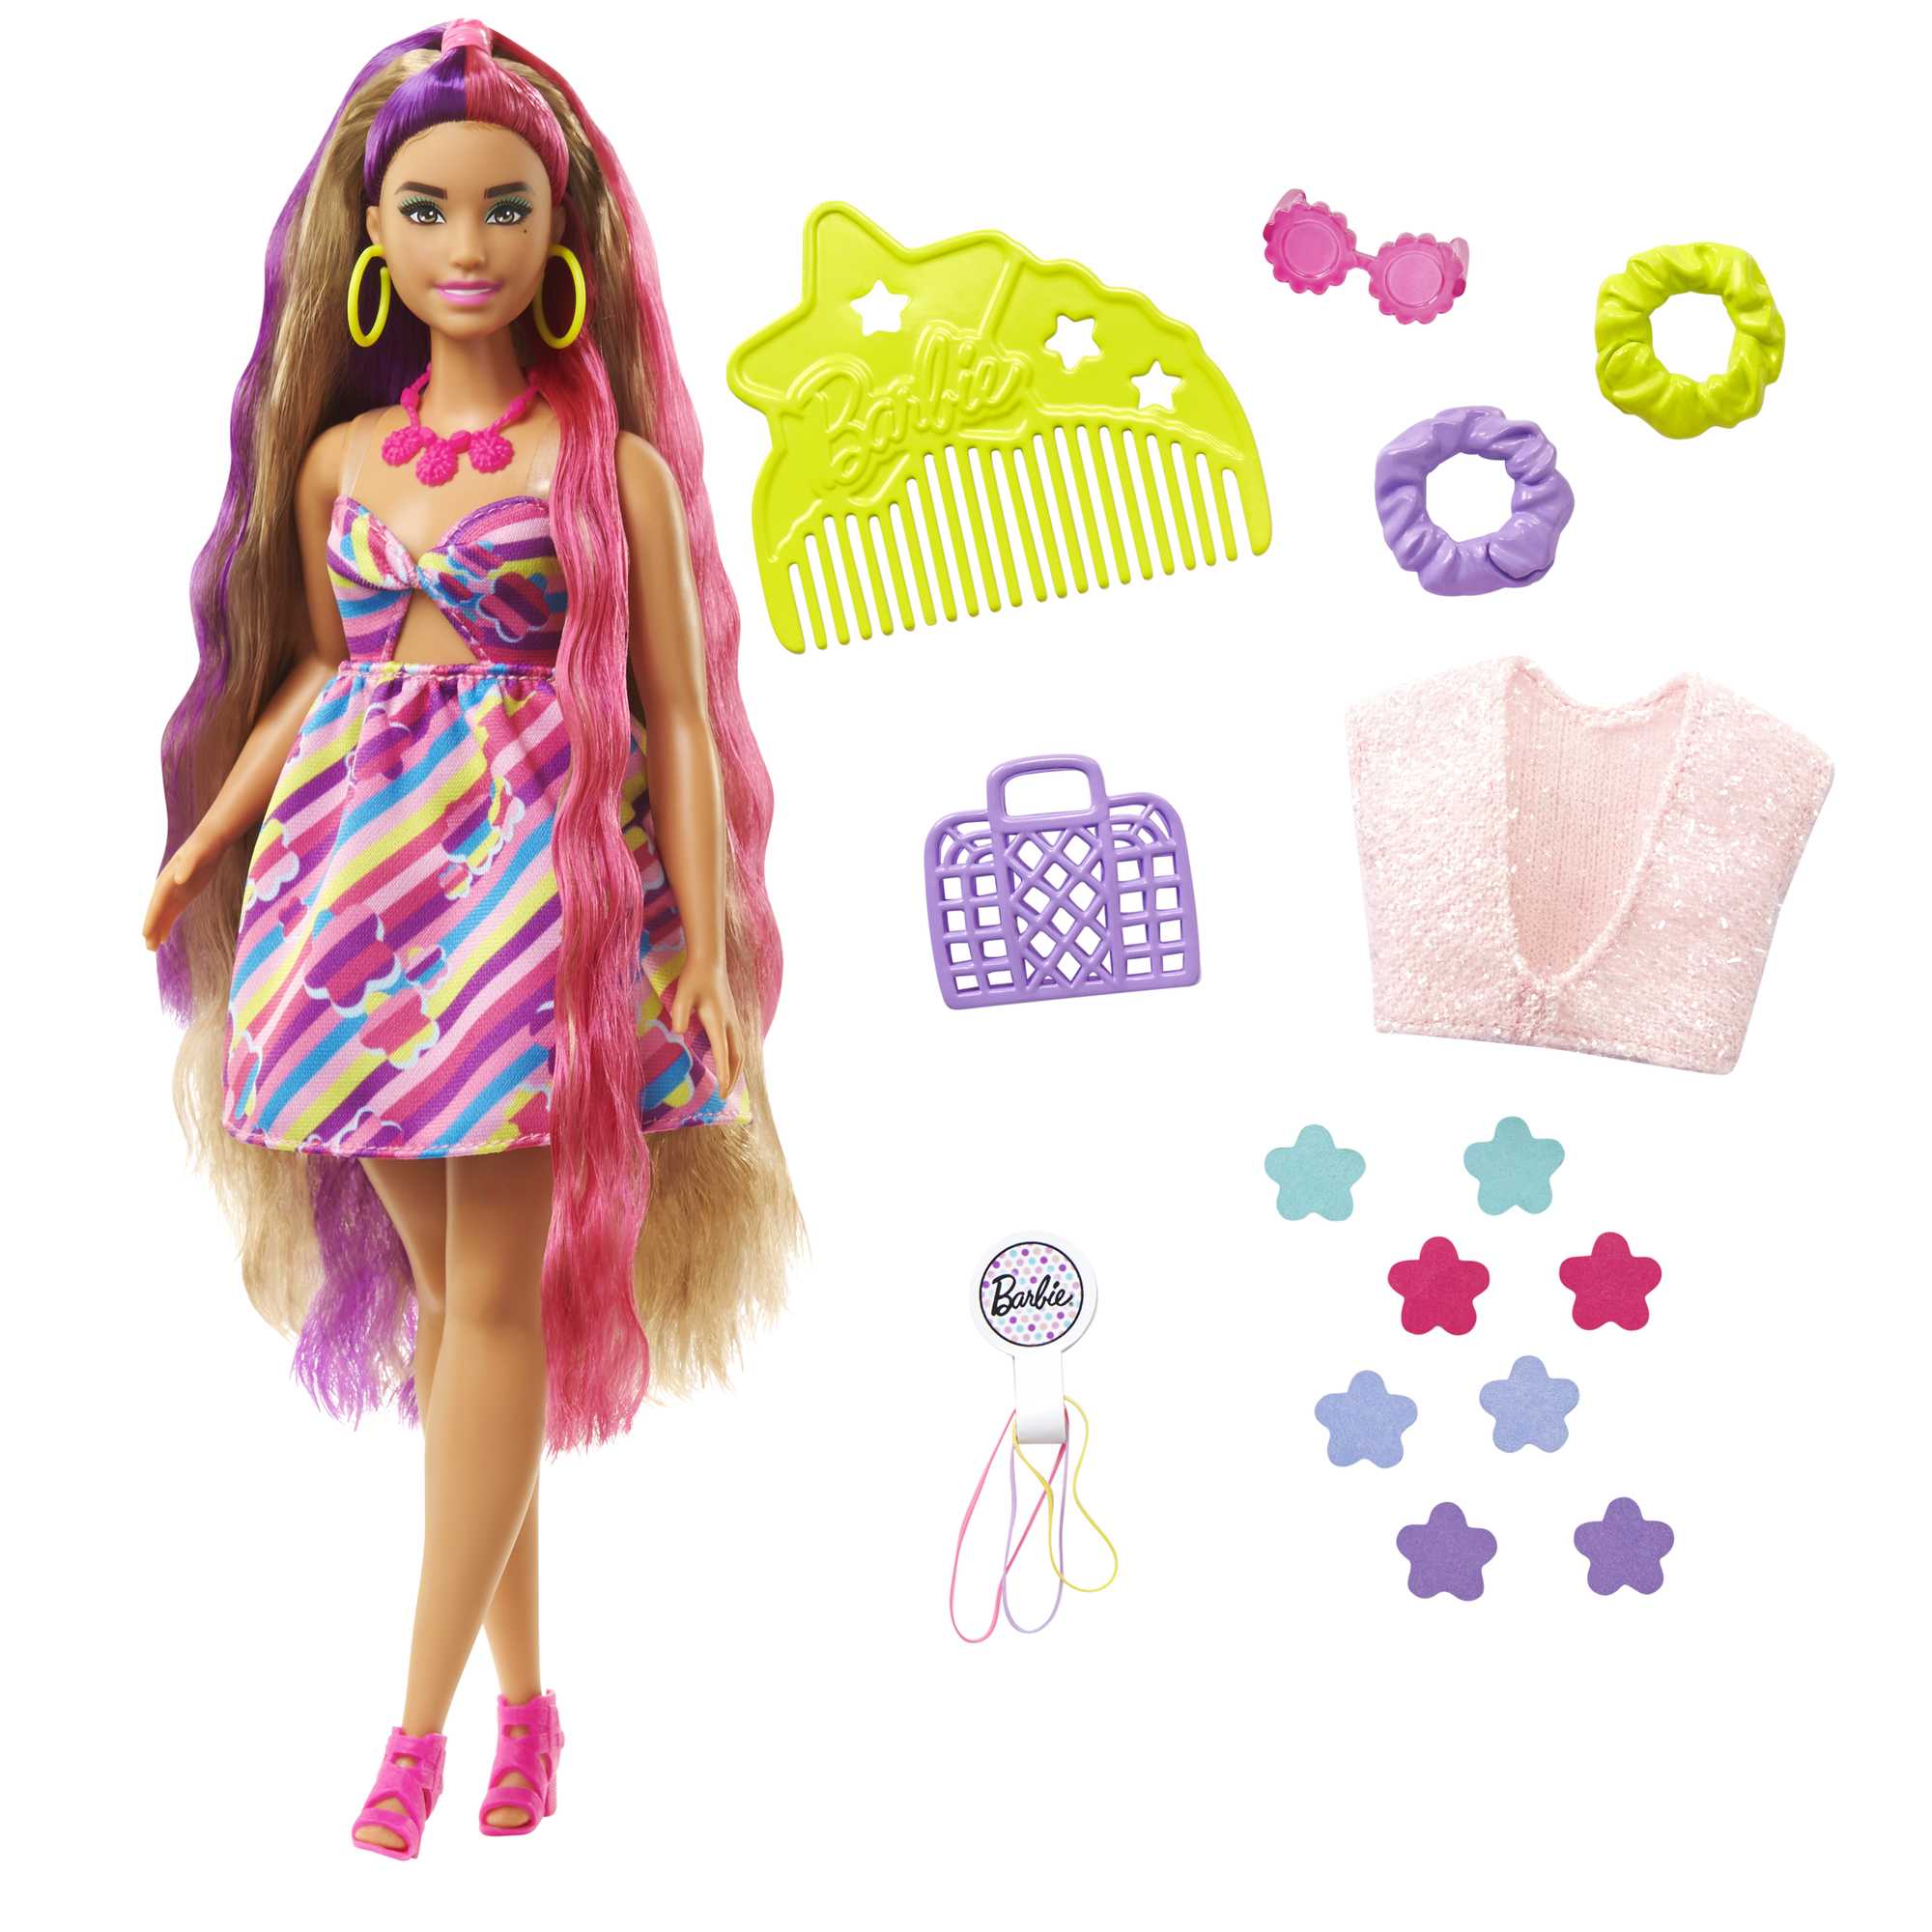 Barbie original dreamtopia sereia boneca mistério princesa dressup